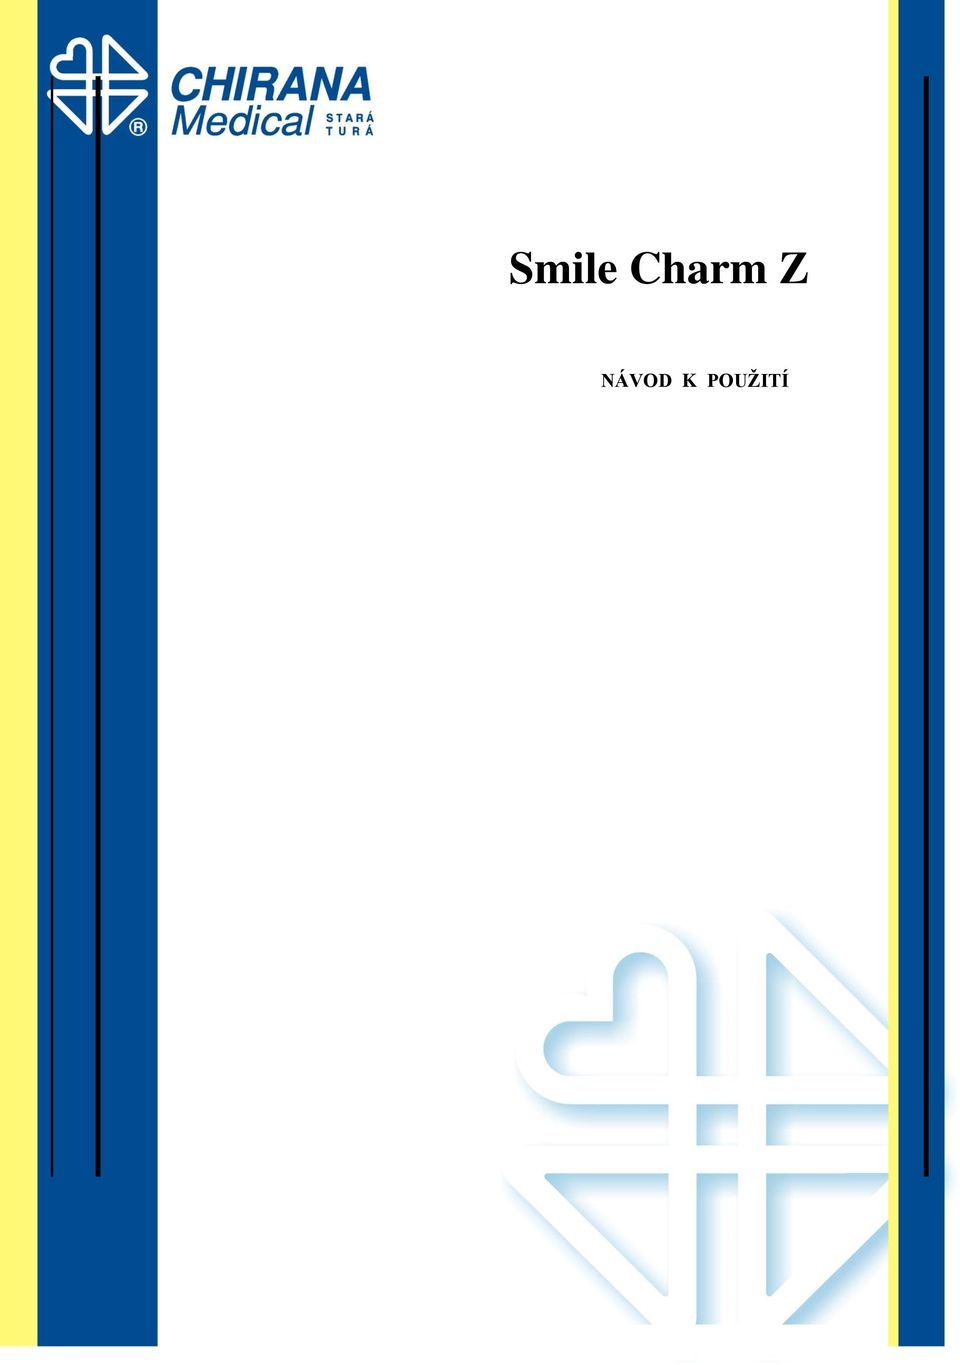 Charm Z